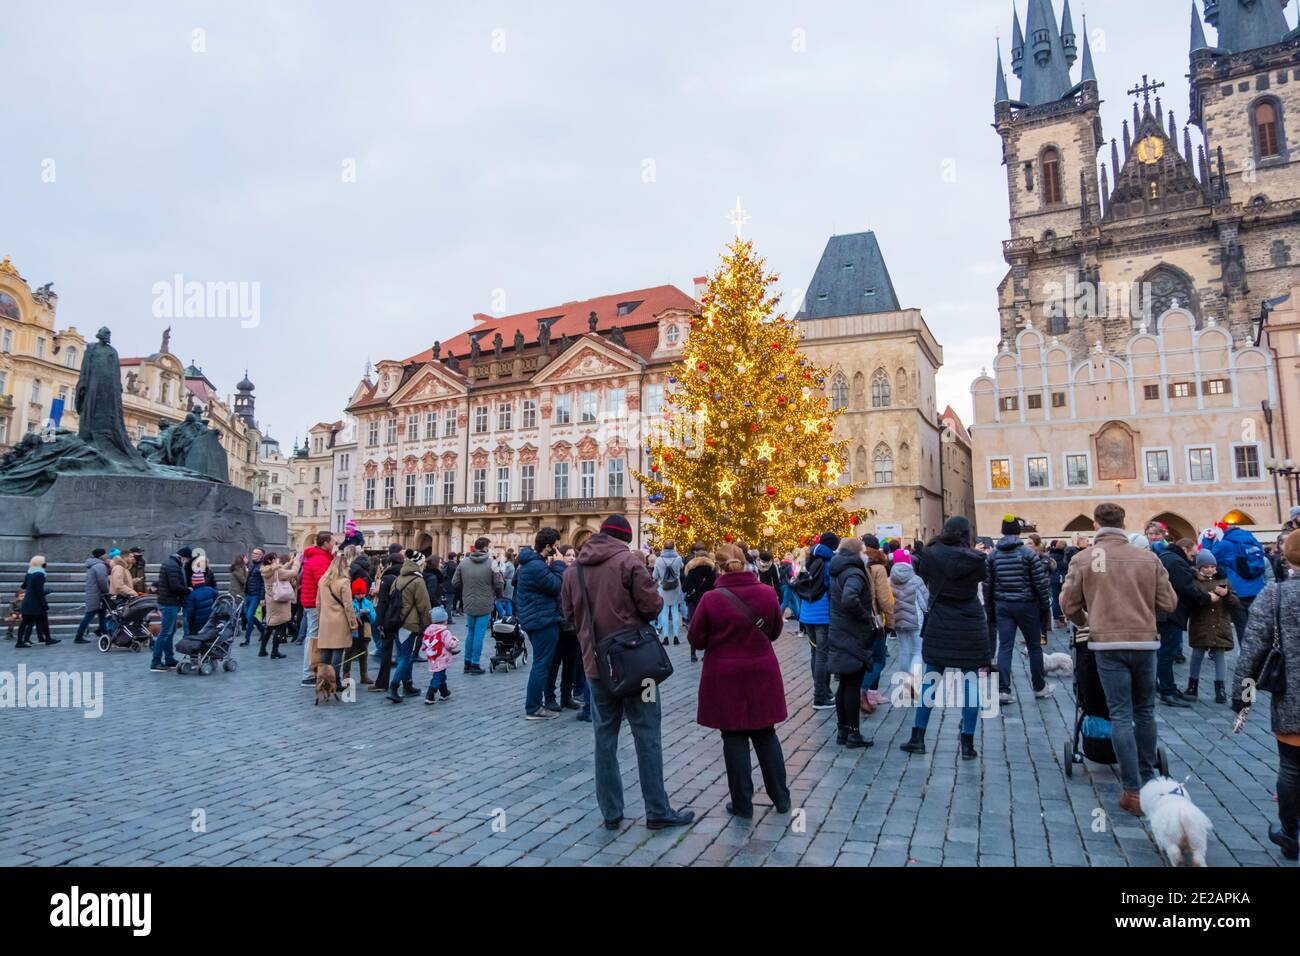 Weihnachtsbaum, Altstadtplatz, Prag, Tschechische Republik Stockfoto